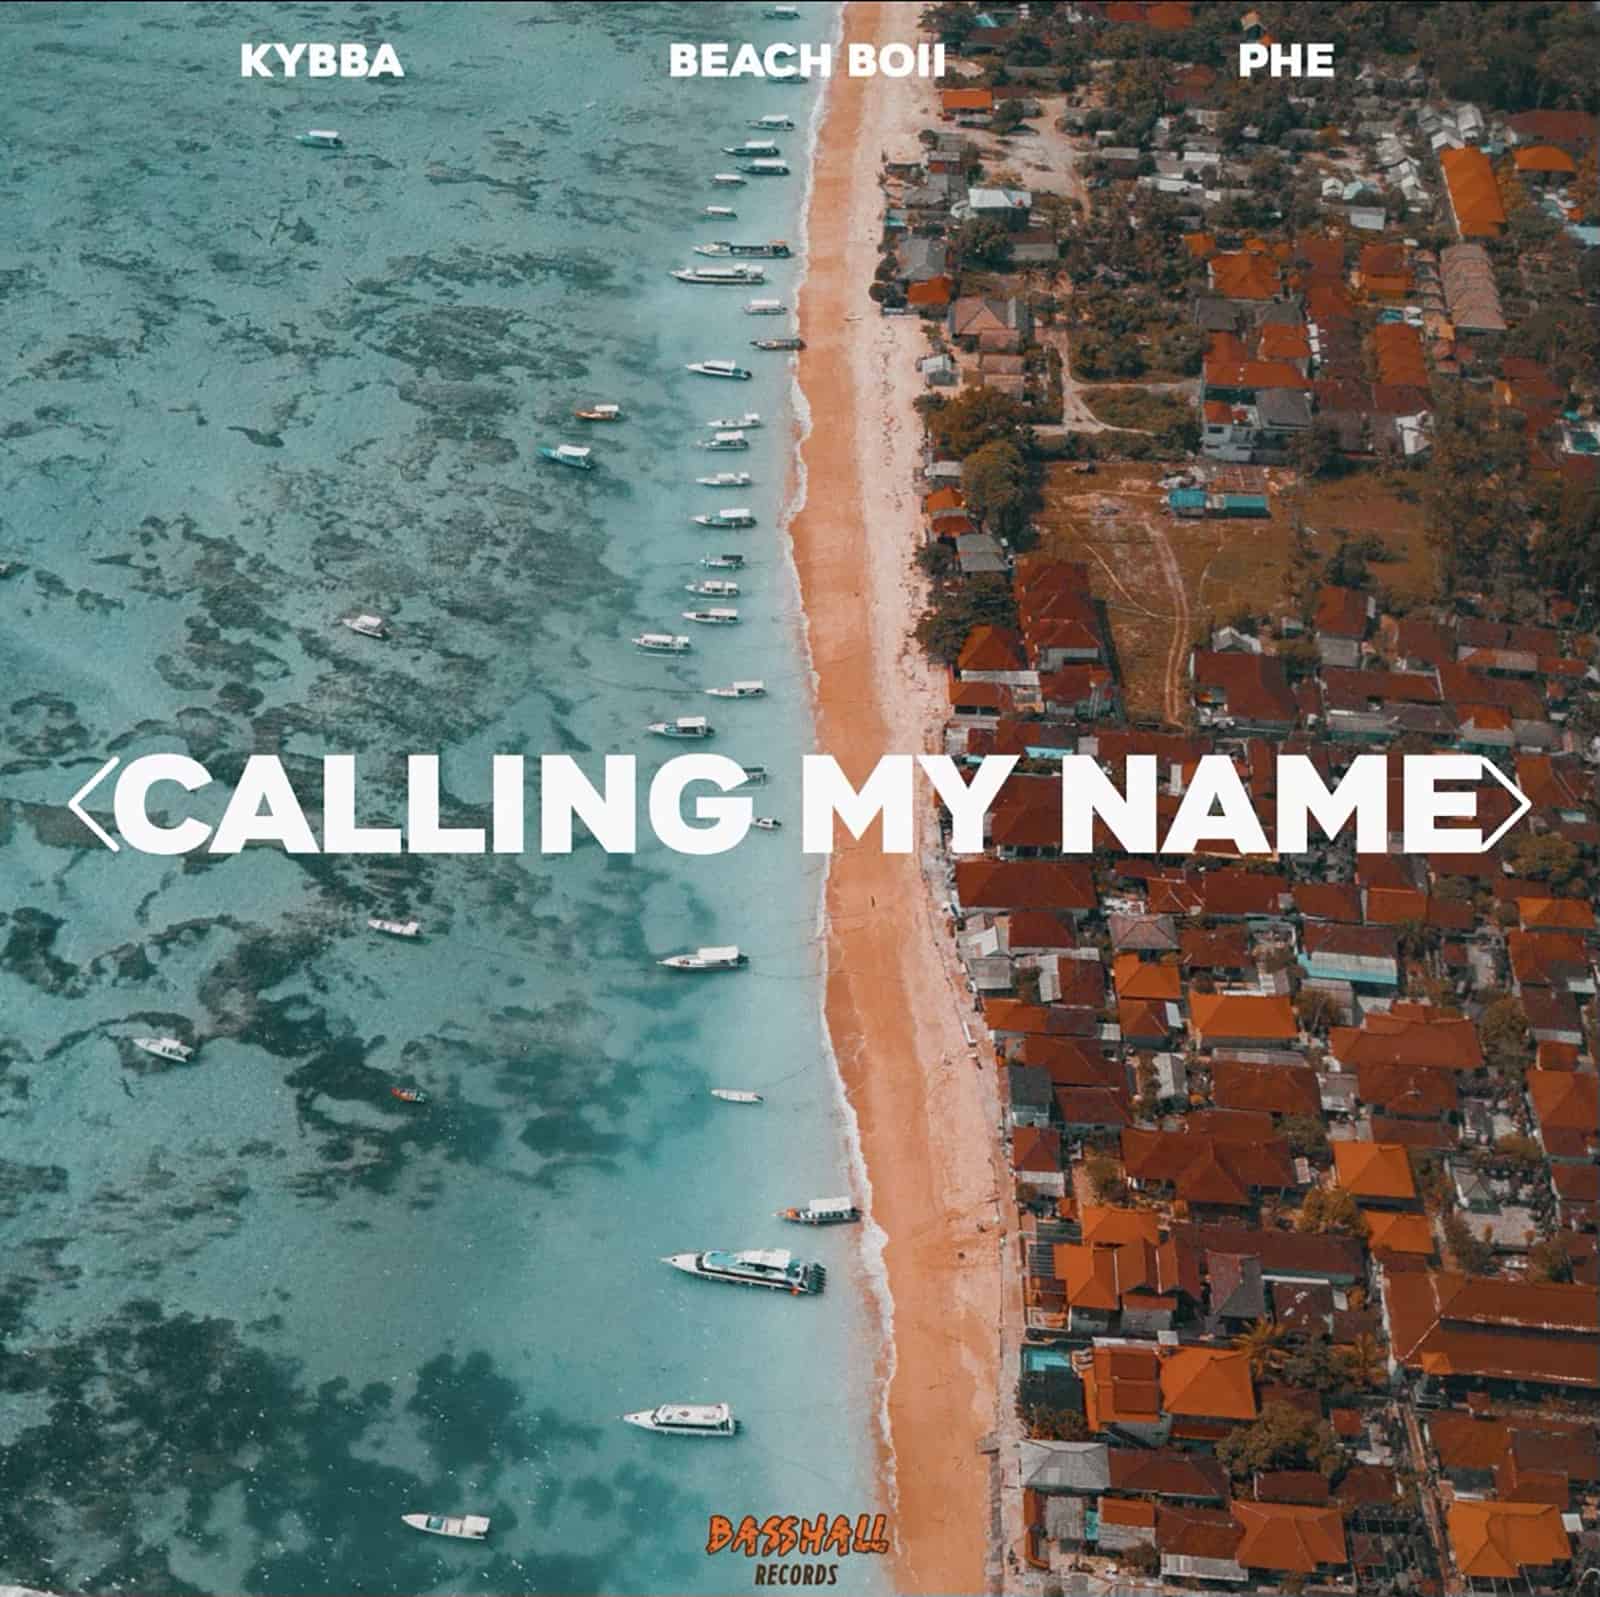 Kybba, Beach Boii & PHE - Calling My Name